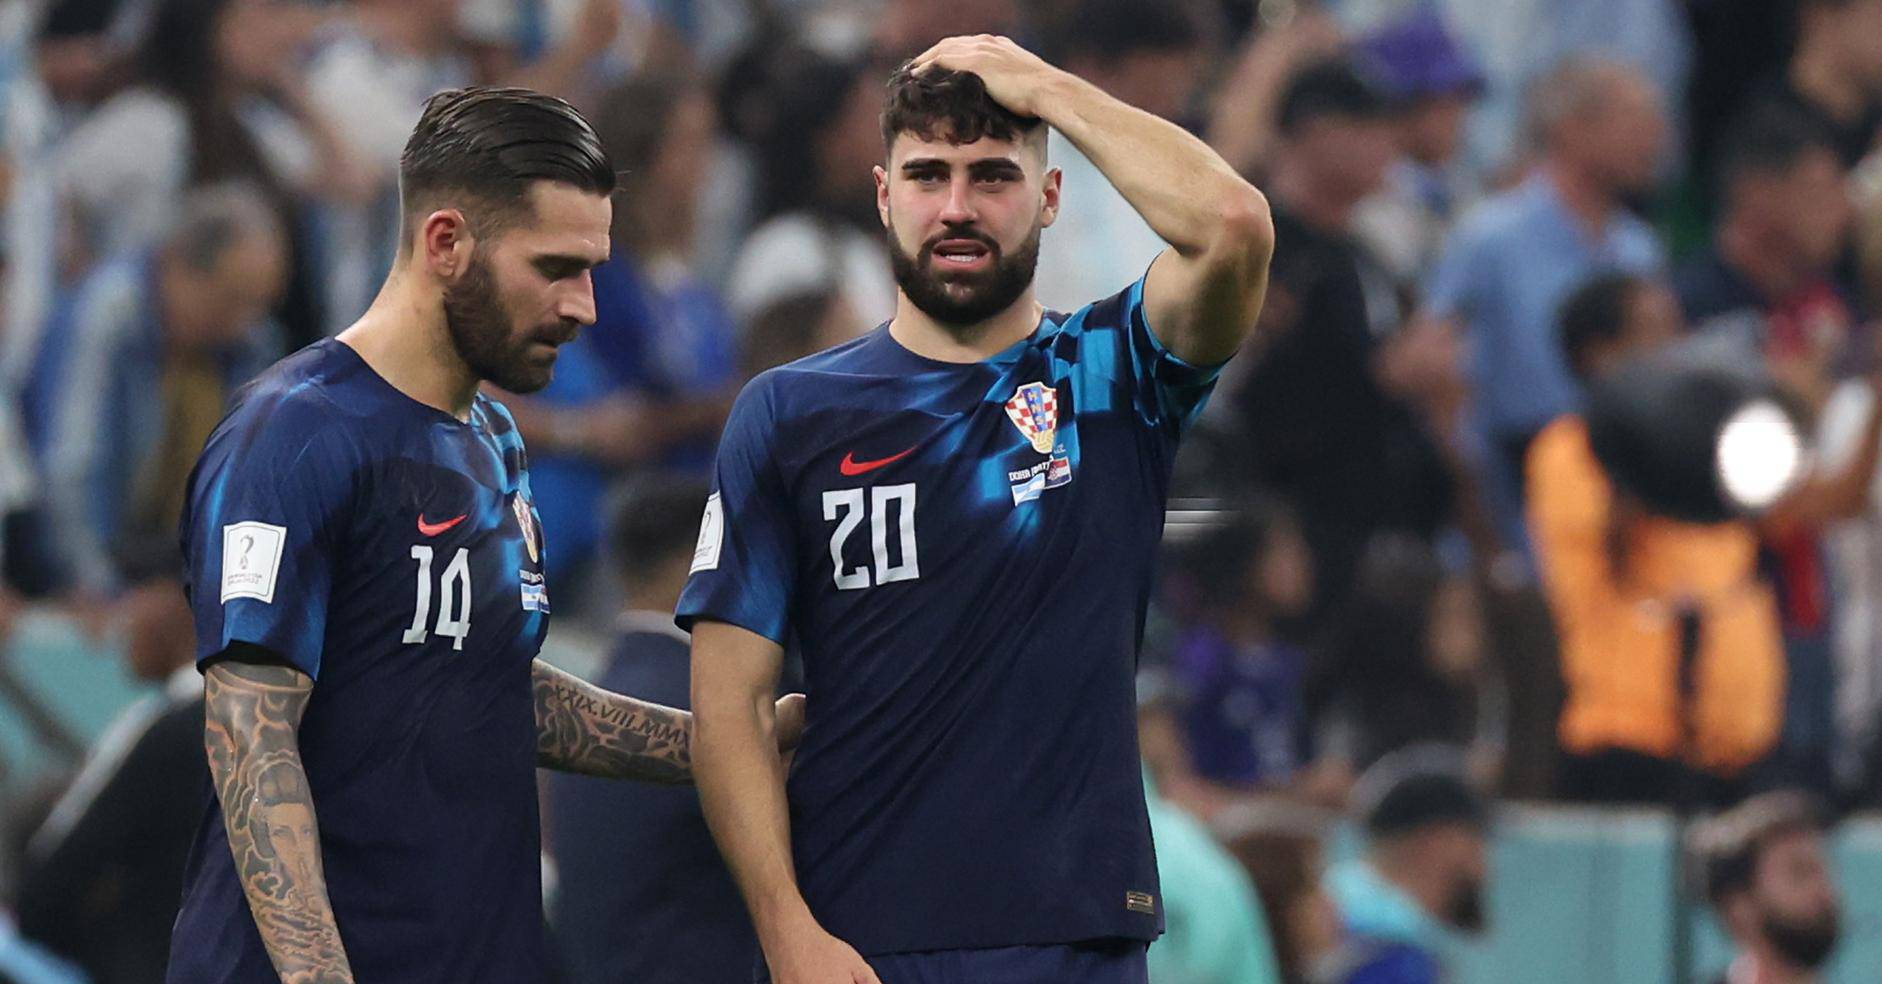 KATAR 2022 - Tuga na licima hrvatskih igra?a nakon poraza od Argentine